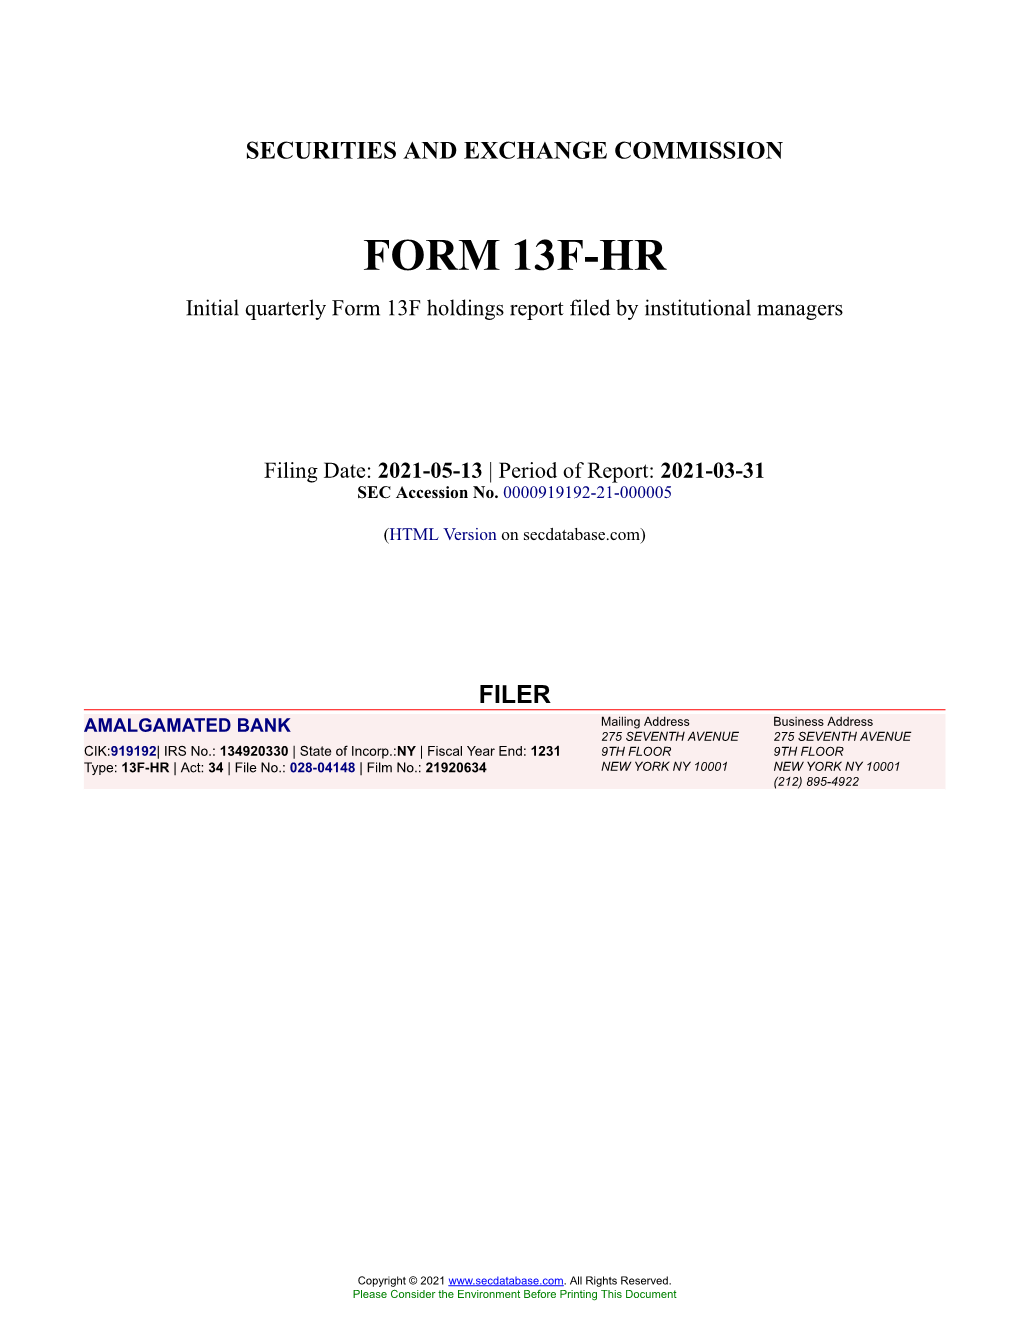 AMALGAMATED BANK Form 13F-HR Filed 2021-05-13